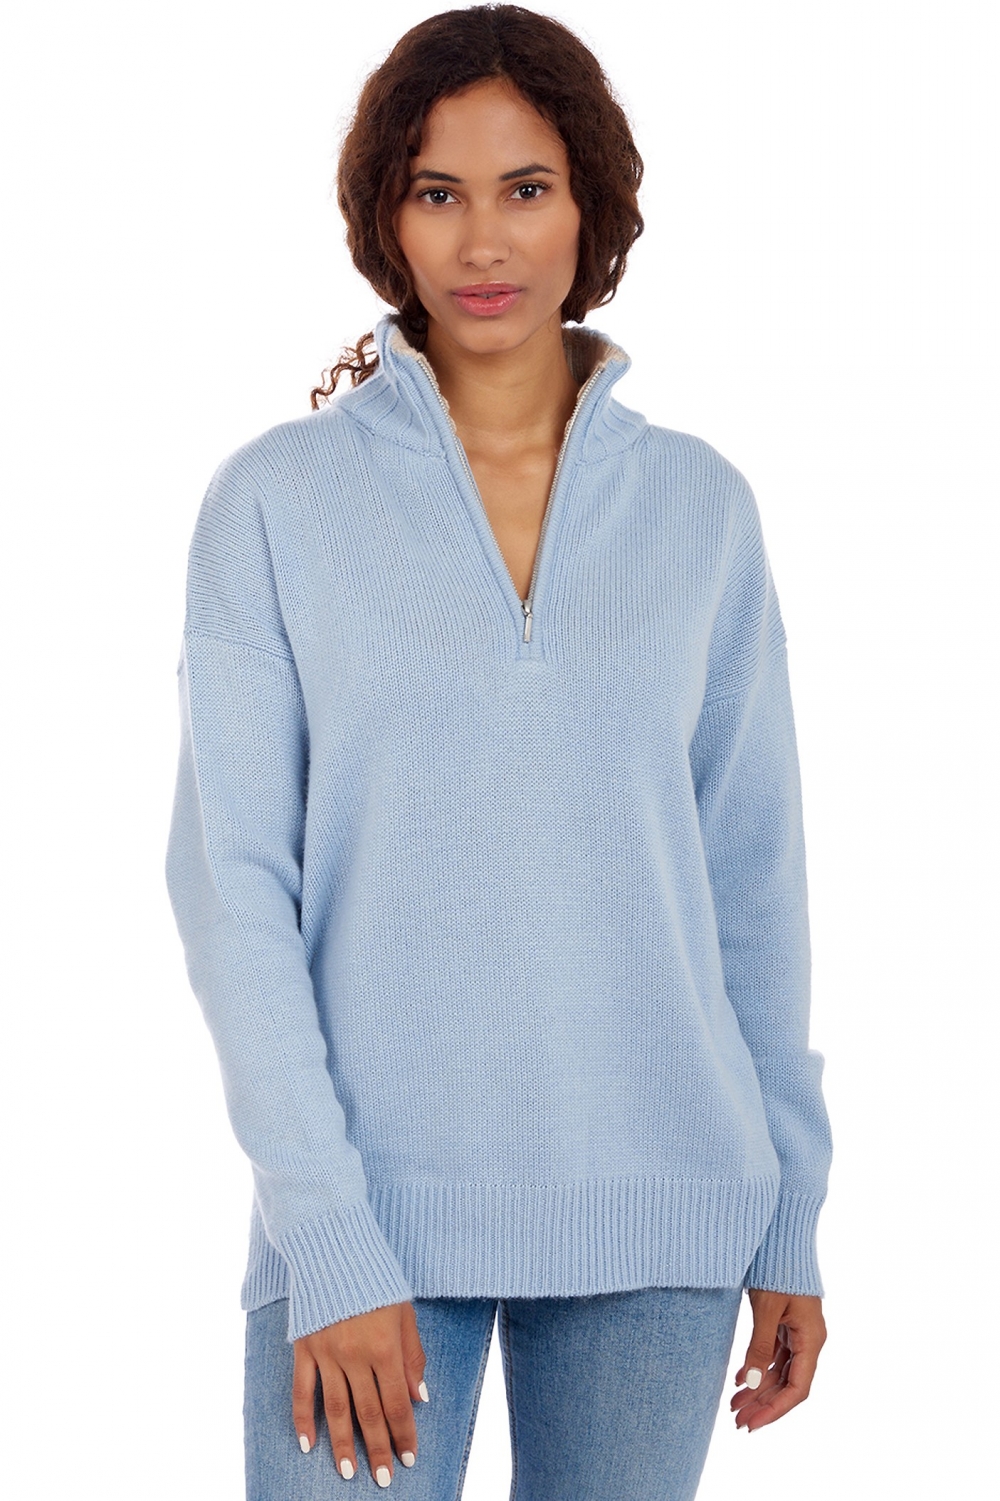 Cashmere ladies our full range of women s sweaters alizette ciel 2xl